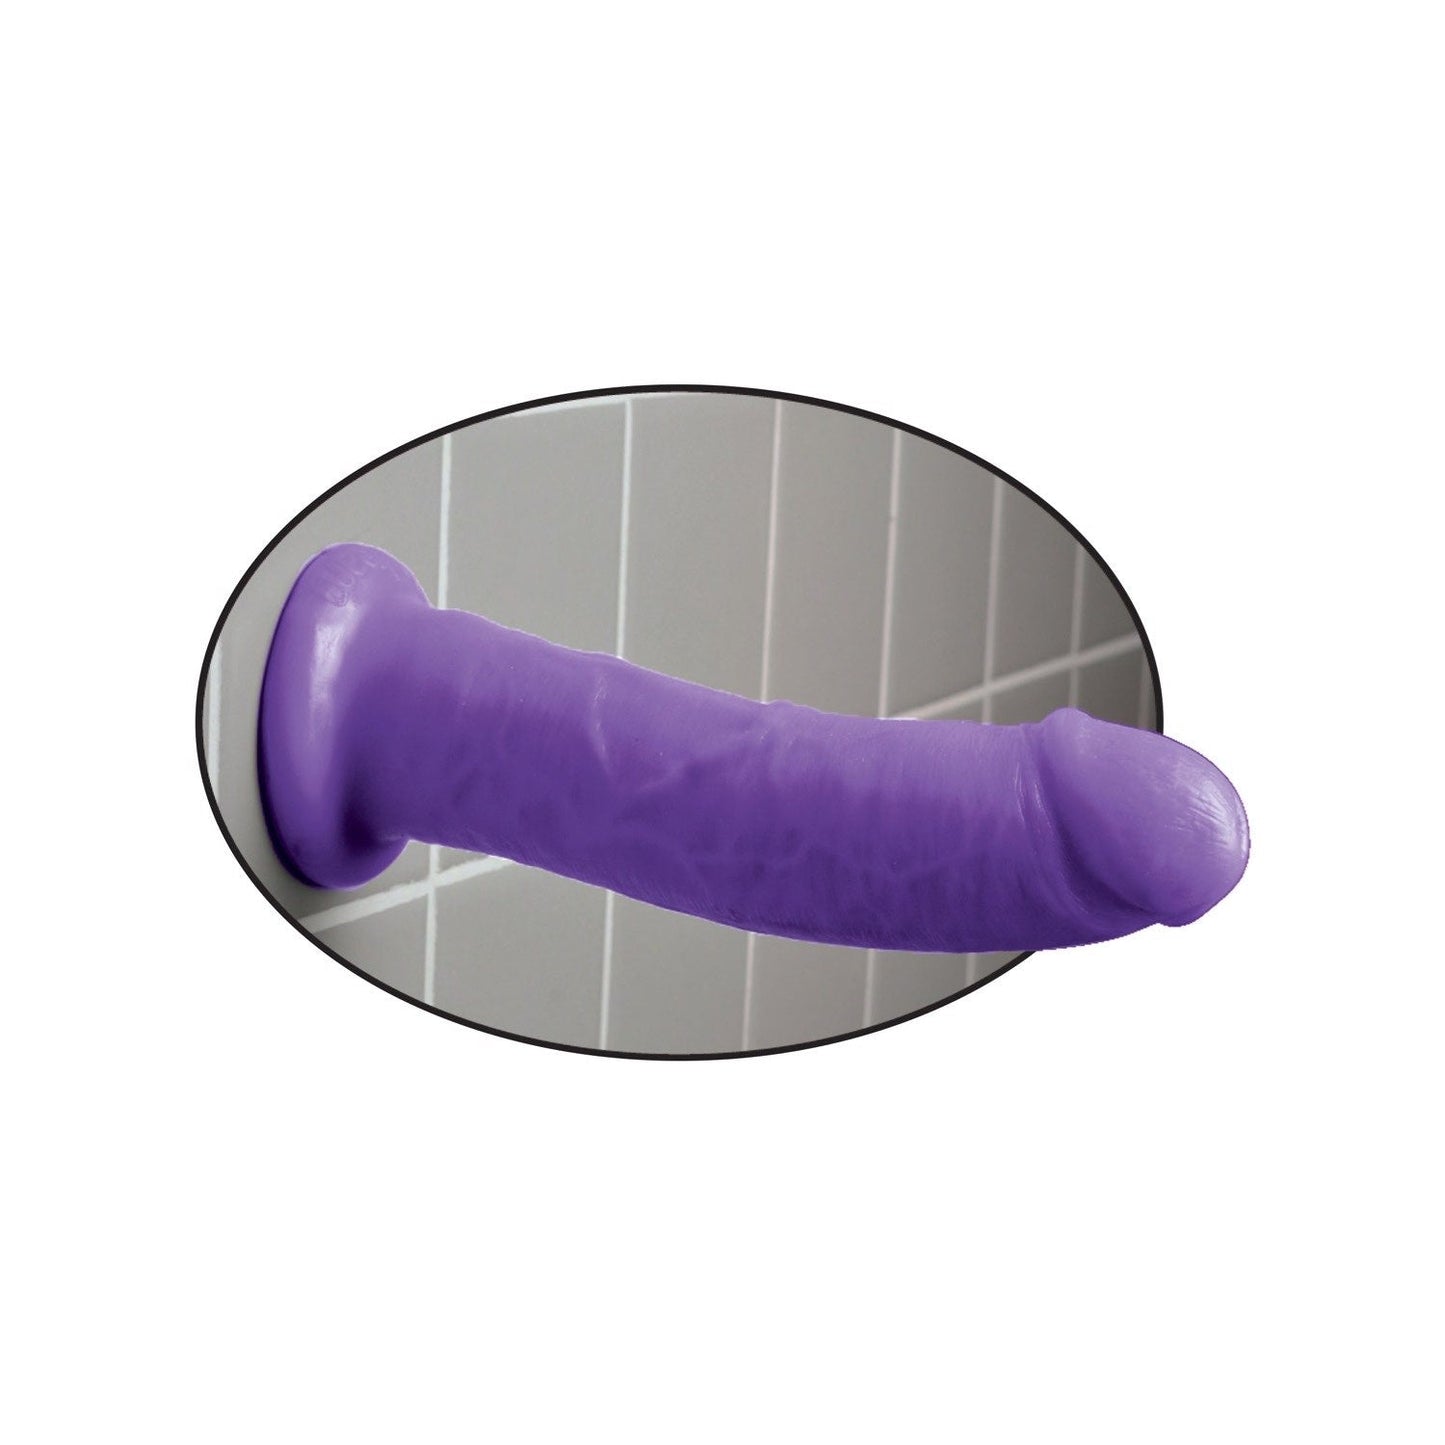 8 英寸假阳具 - 紫色 20.3 厘米东